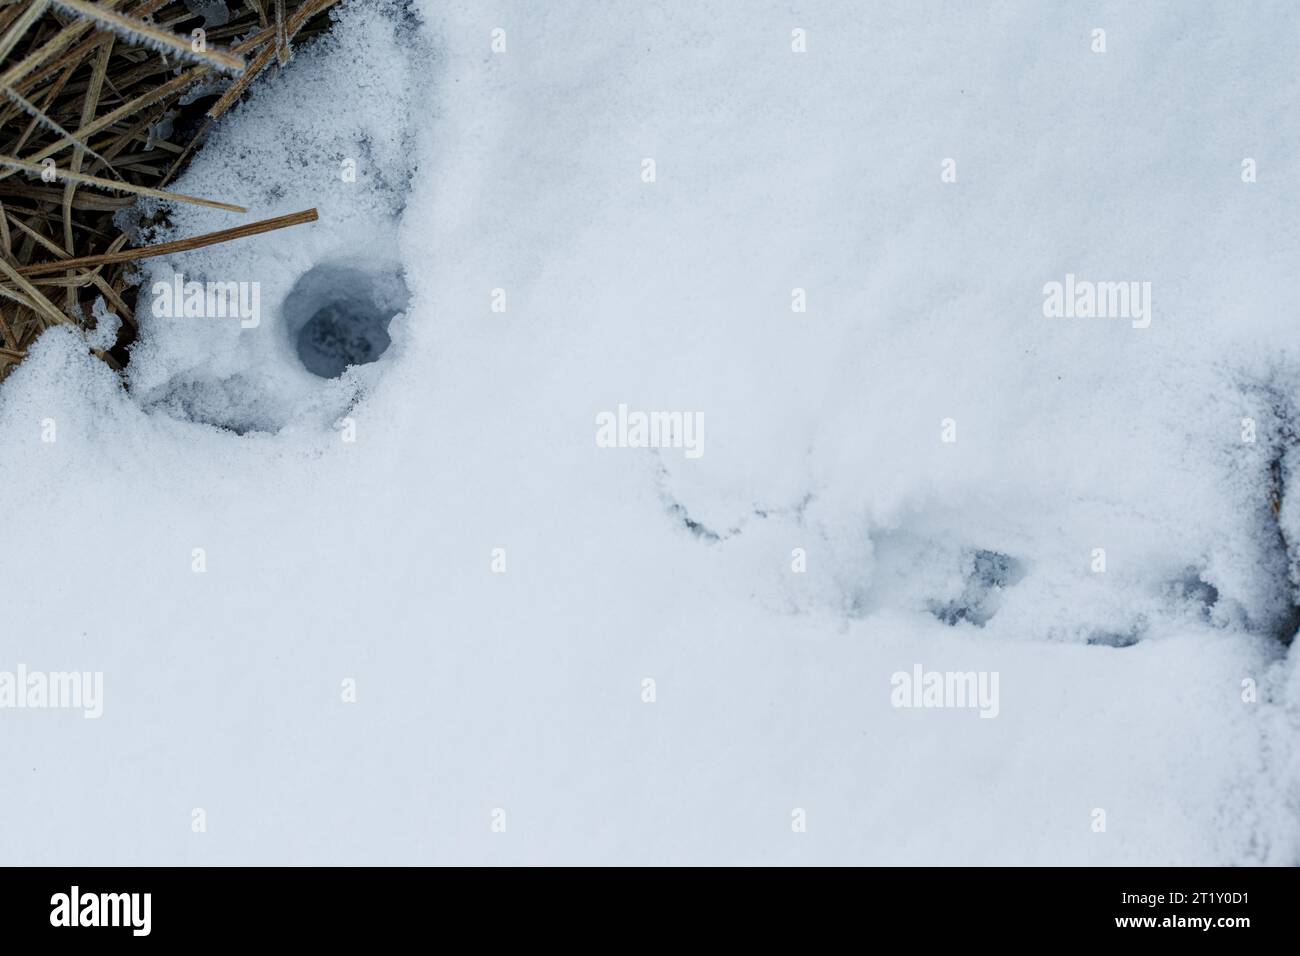 Pistes de neige hivernale de la charrue (Mustela erminea) Banque D'Images